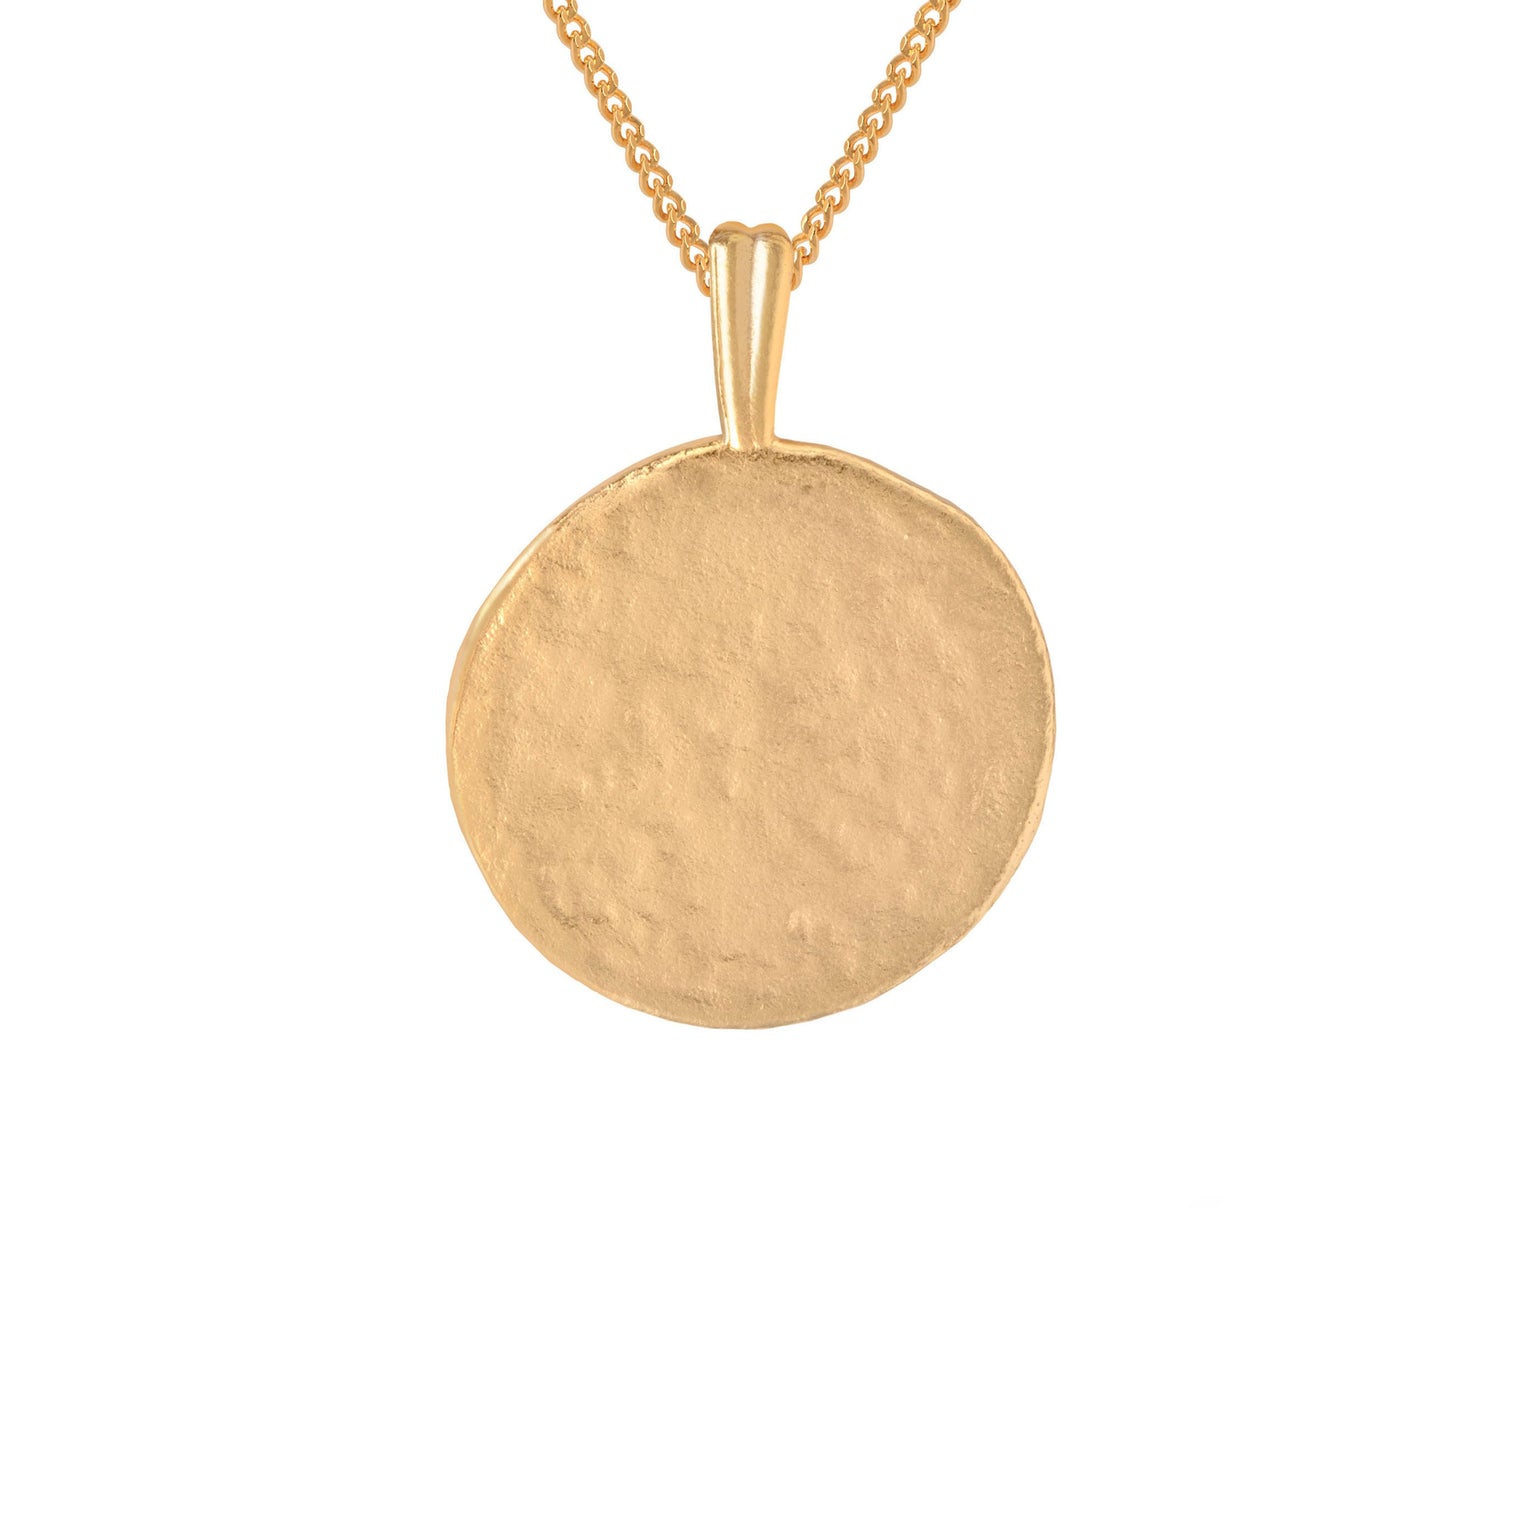 Scorpio Zodiac Pendant Necklace in Gold back of pendant